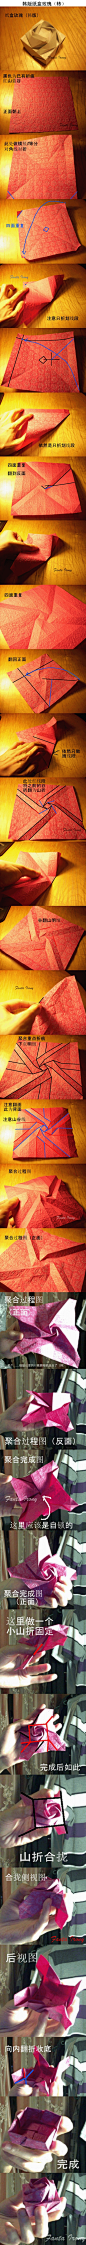 韩版纸盒玫瑰折纸 #采集大赛#